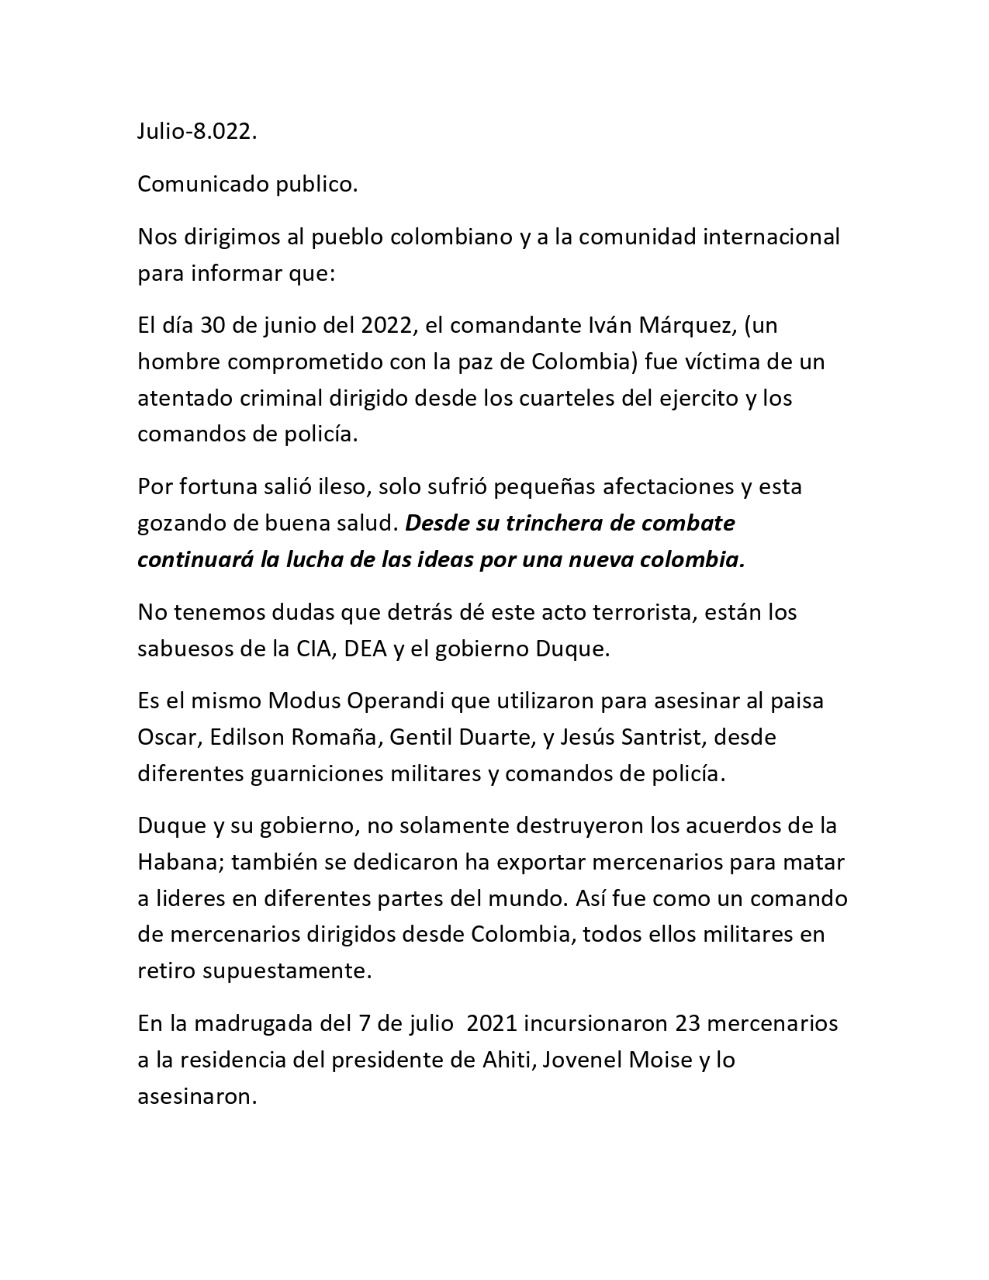 Comunicado de Segunda Marquetalia, sobre la situación de Iván Márquez. FOTO: REVISTA CAMBIO